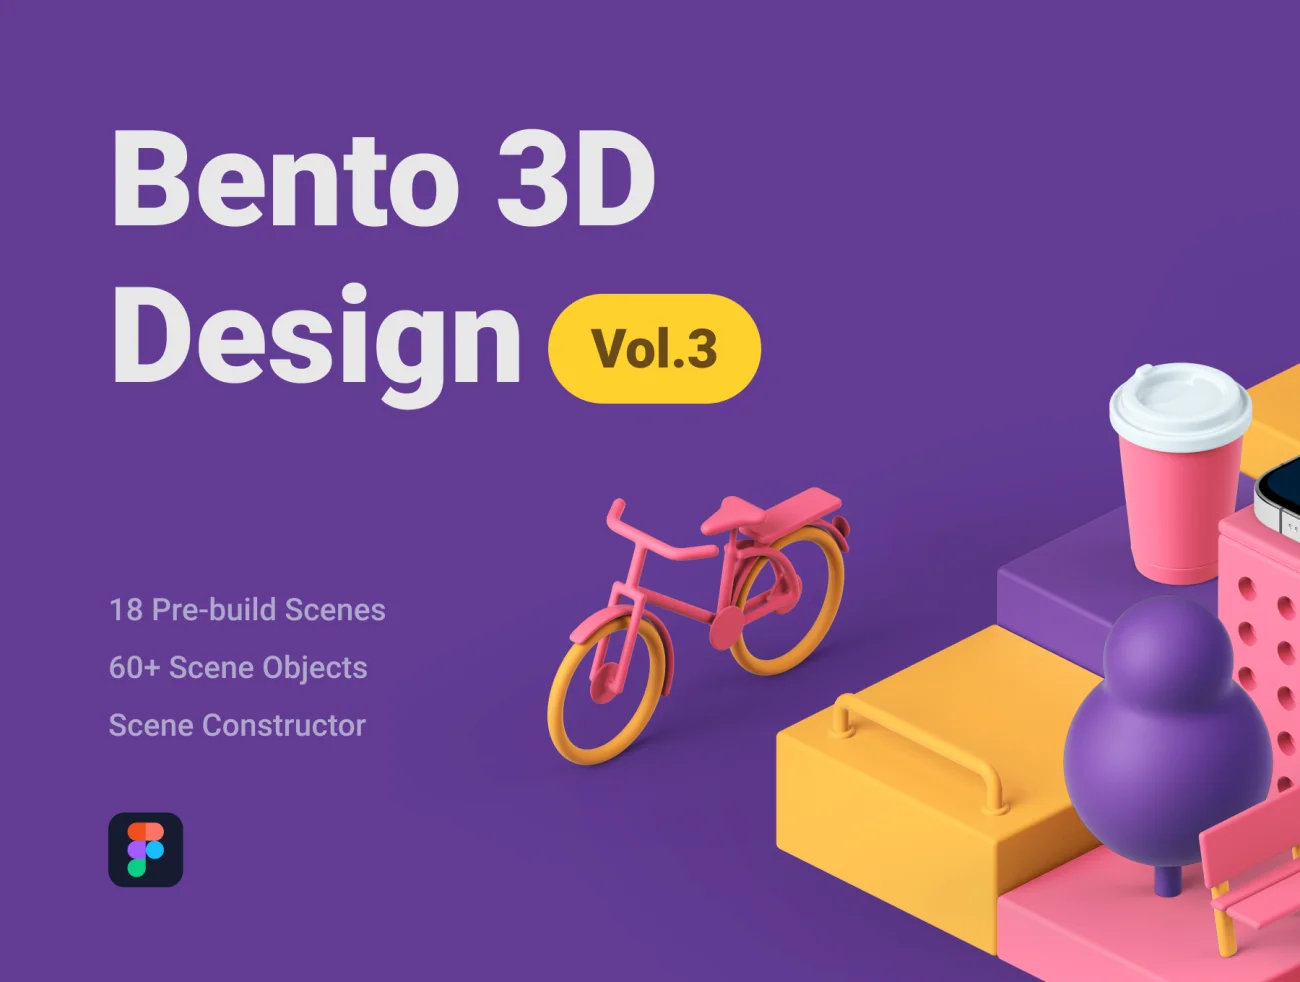 Bento 3D Design Vol.3 18预建场景60个3D元素立体展示场景搭建库合集-3D/图标、人物插画、场景插画、学习生活、插画、插画功能、教育医疗、硬件设备、职场办公、运动健身、金融理财-到位啦UI